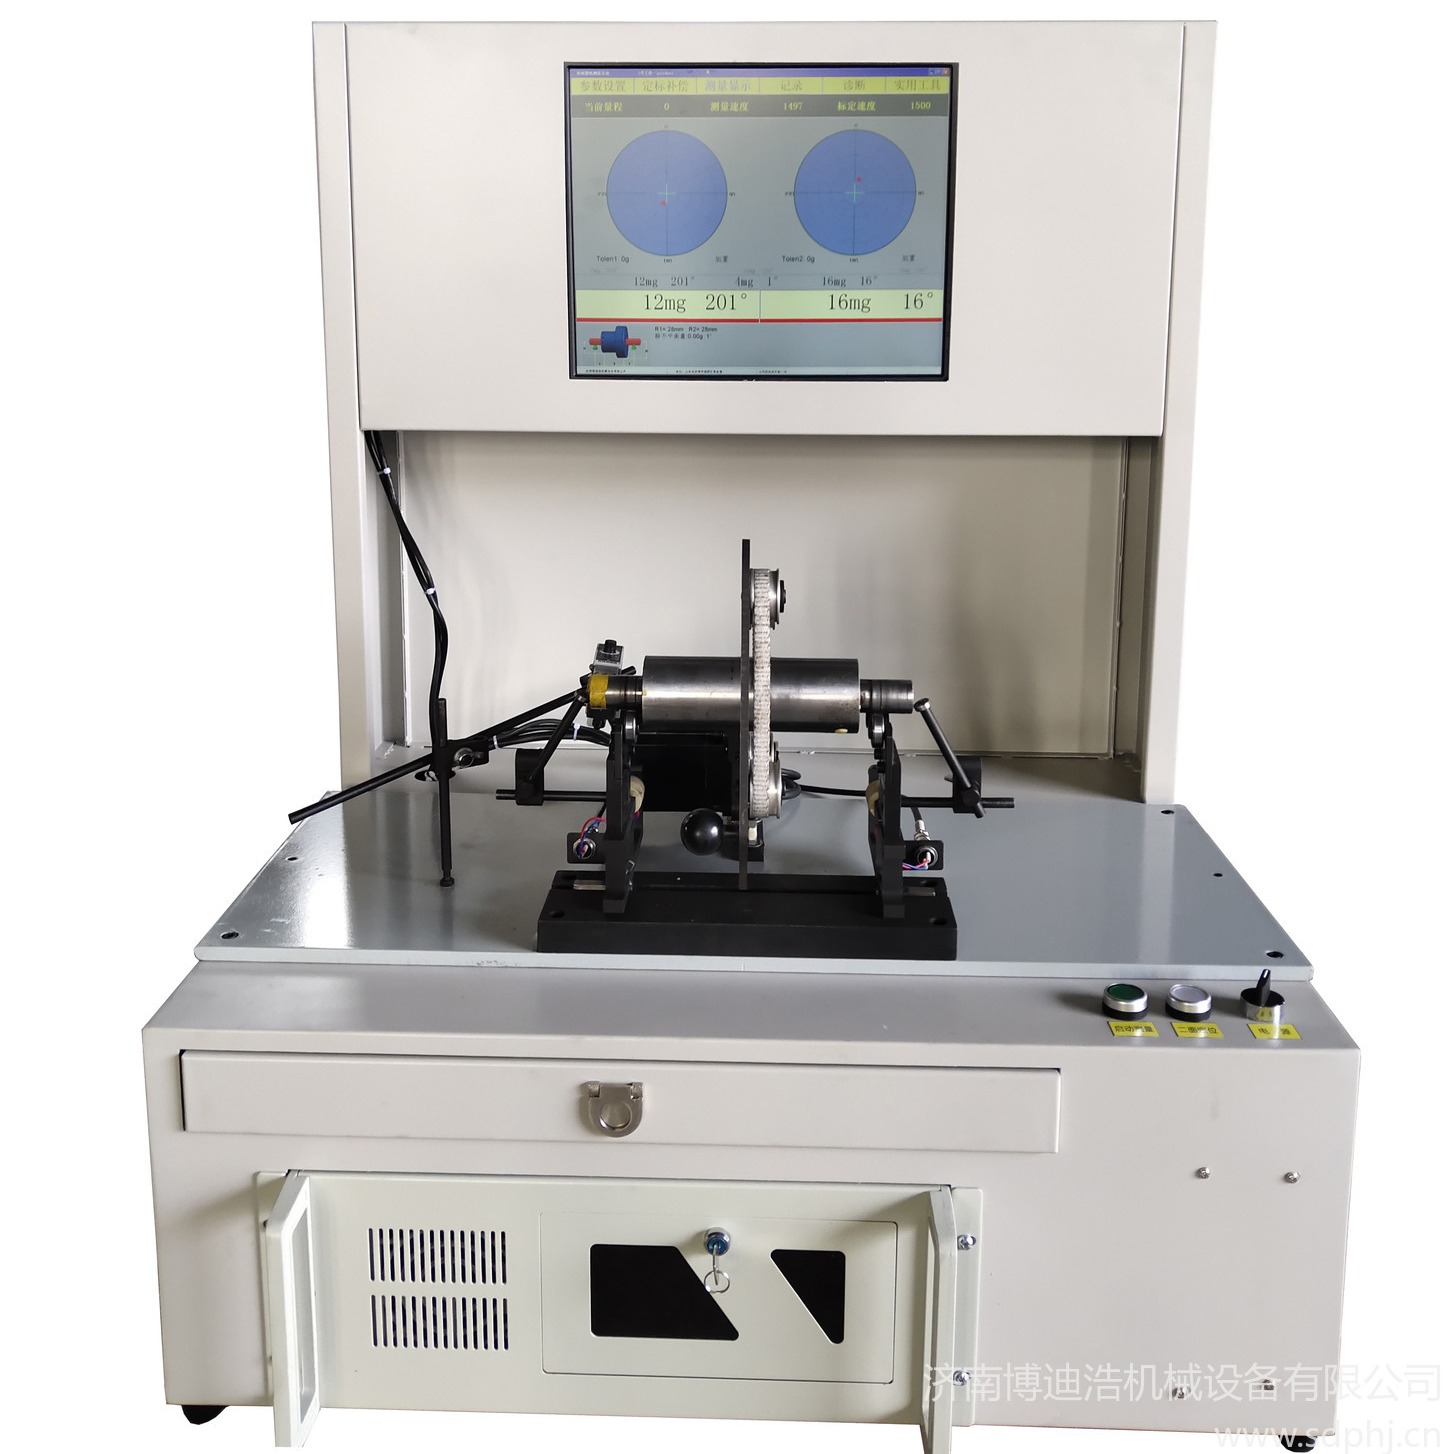 济南博迪浩 热销自动定位动平衡机YYQ-1A 提供动平衡机测量系统和平衡机测量系统改造